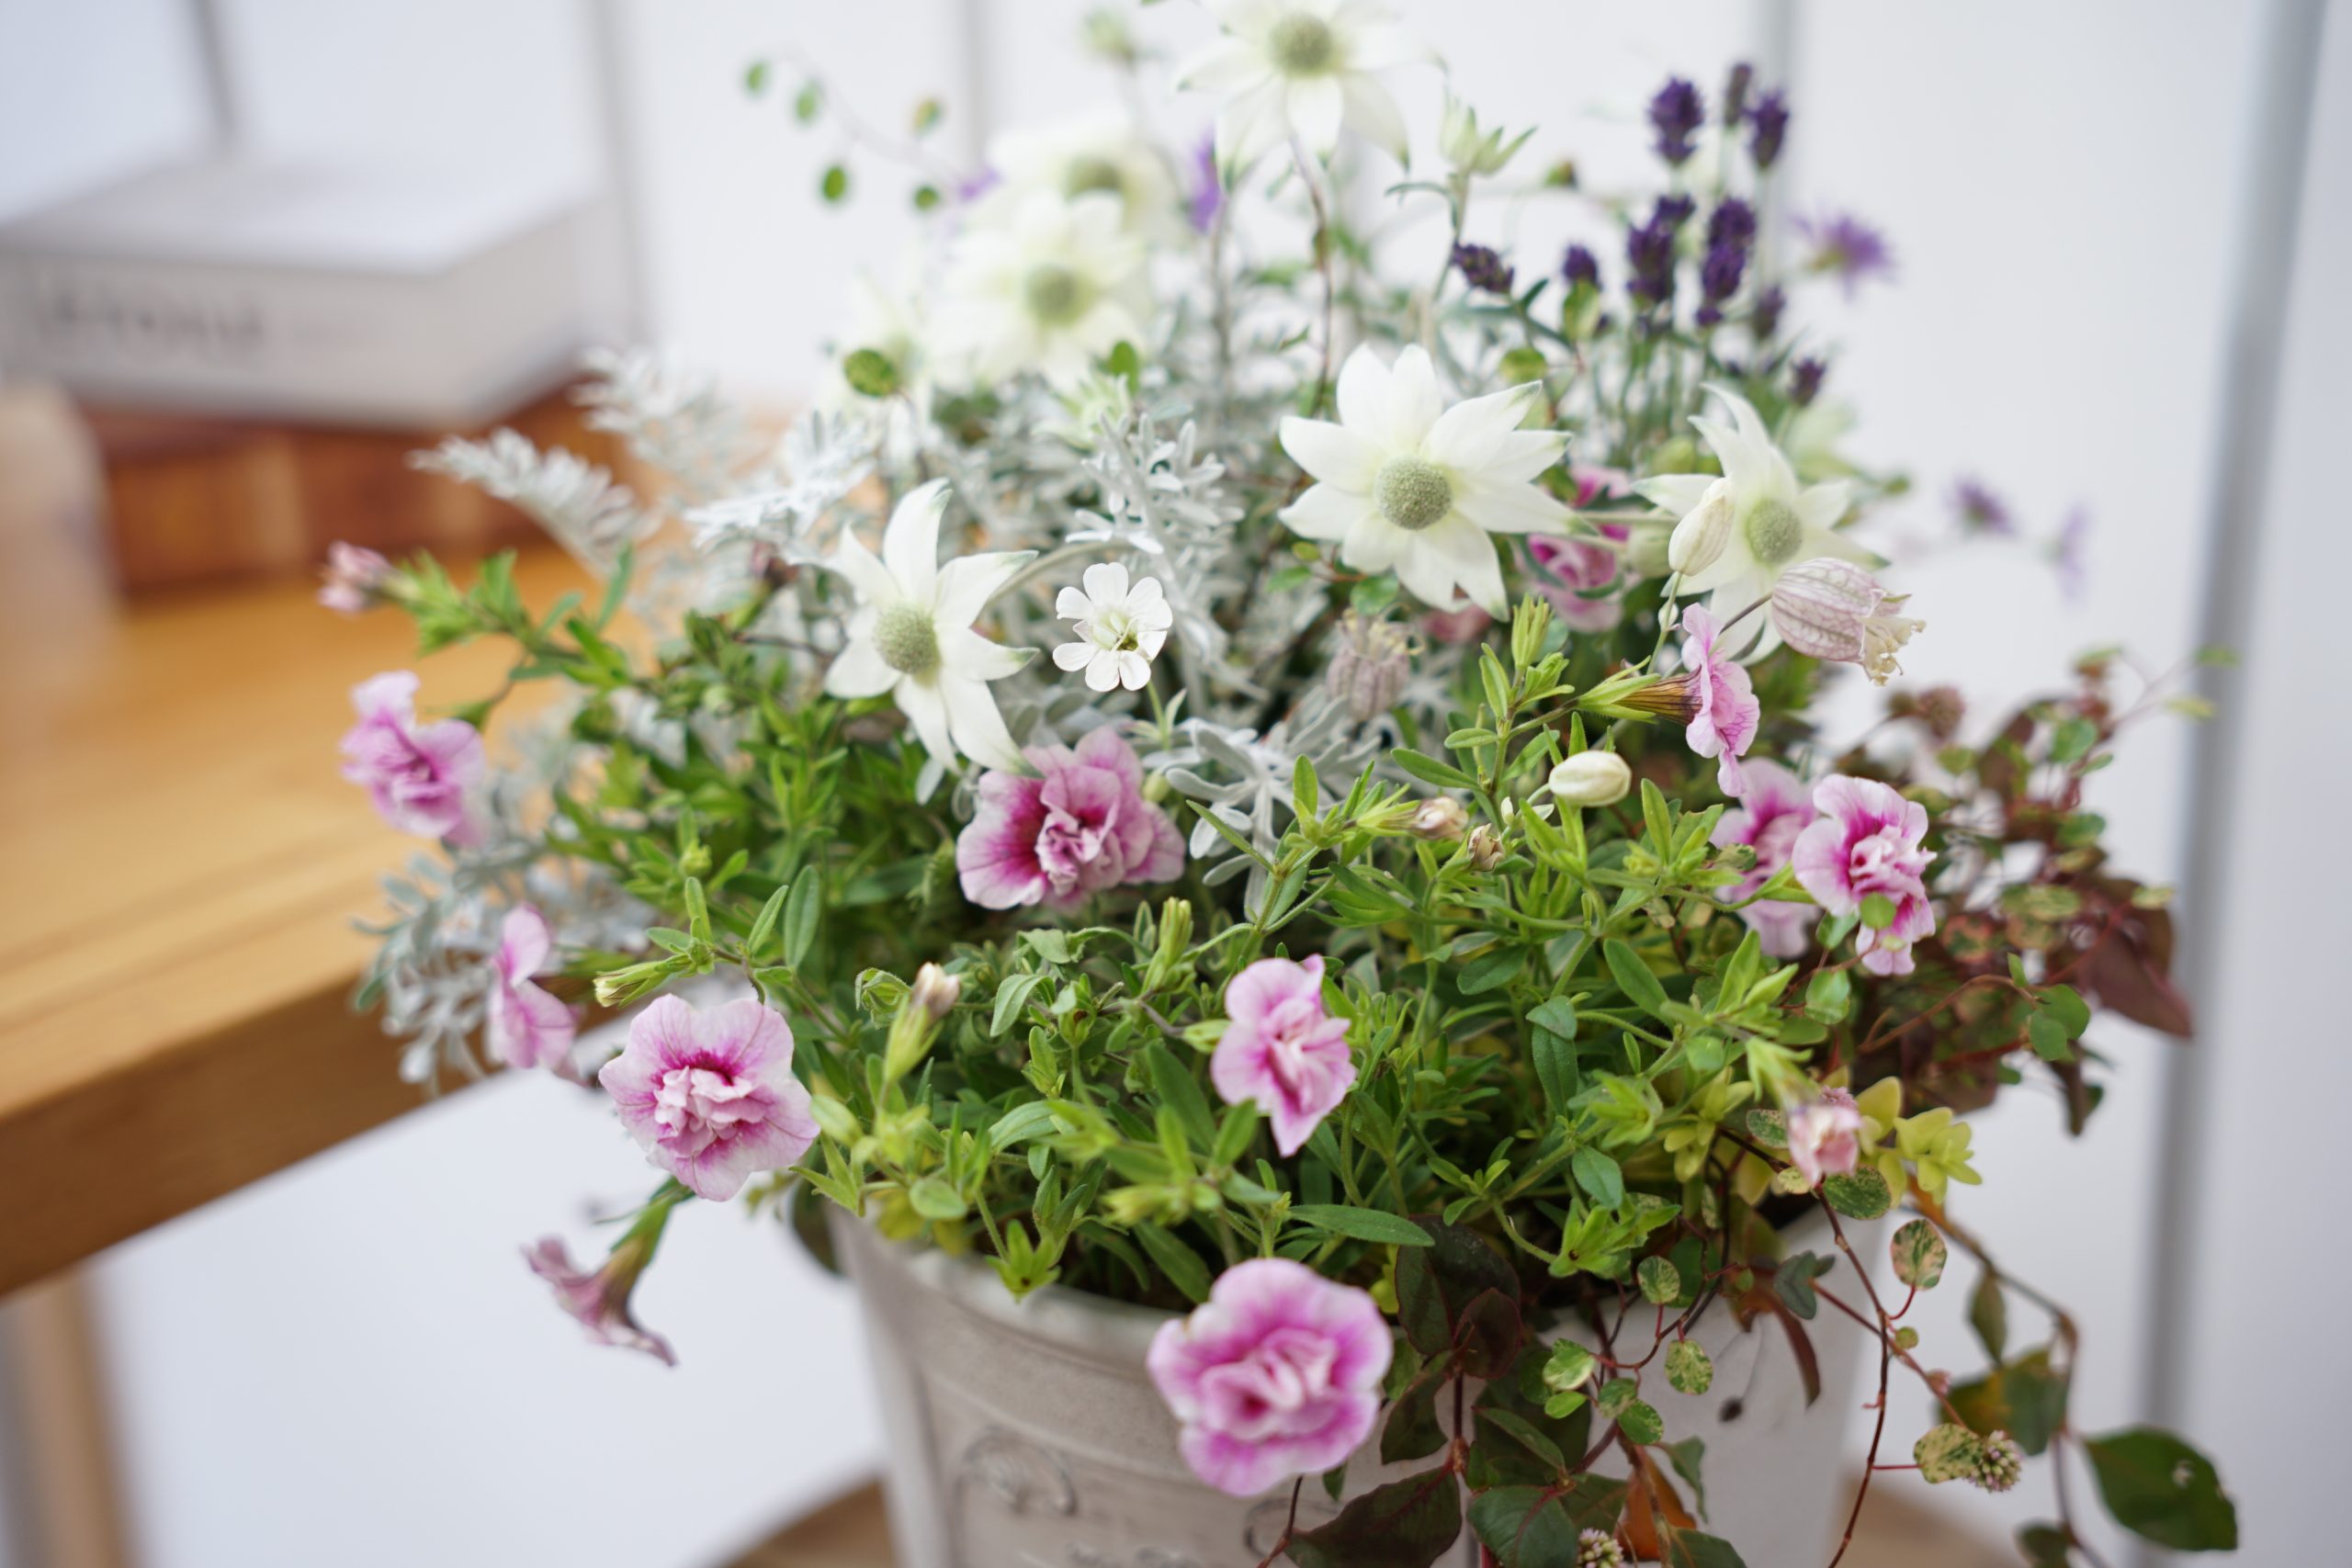 Flower Studio Wreath.Kは、生産者さんが丹精を込めて育ててくれた質の良い苗だけを使った寄せ植えや苗・鉢を販売しております。